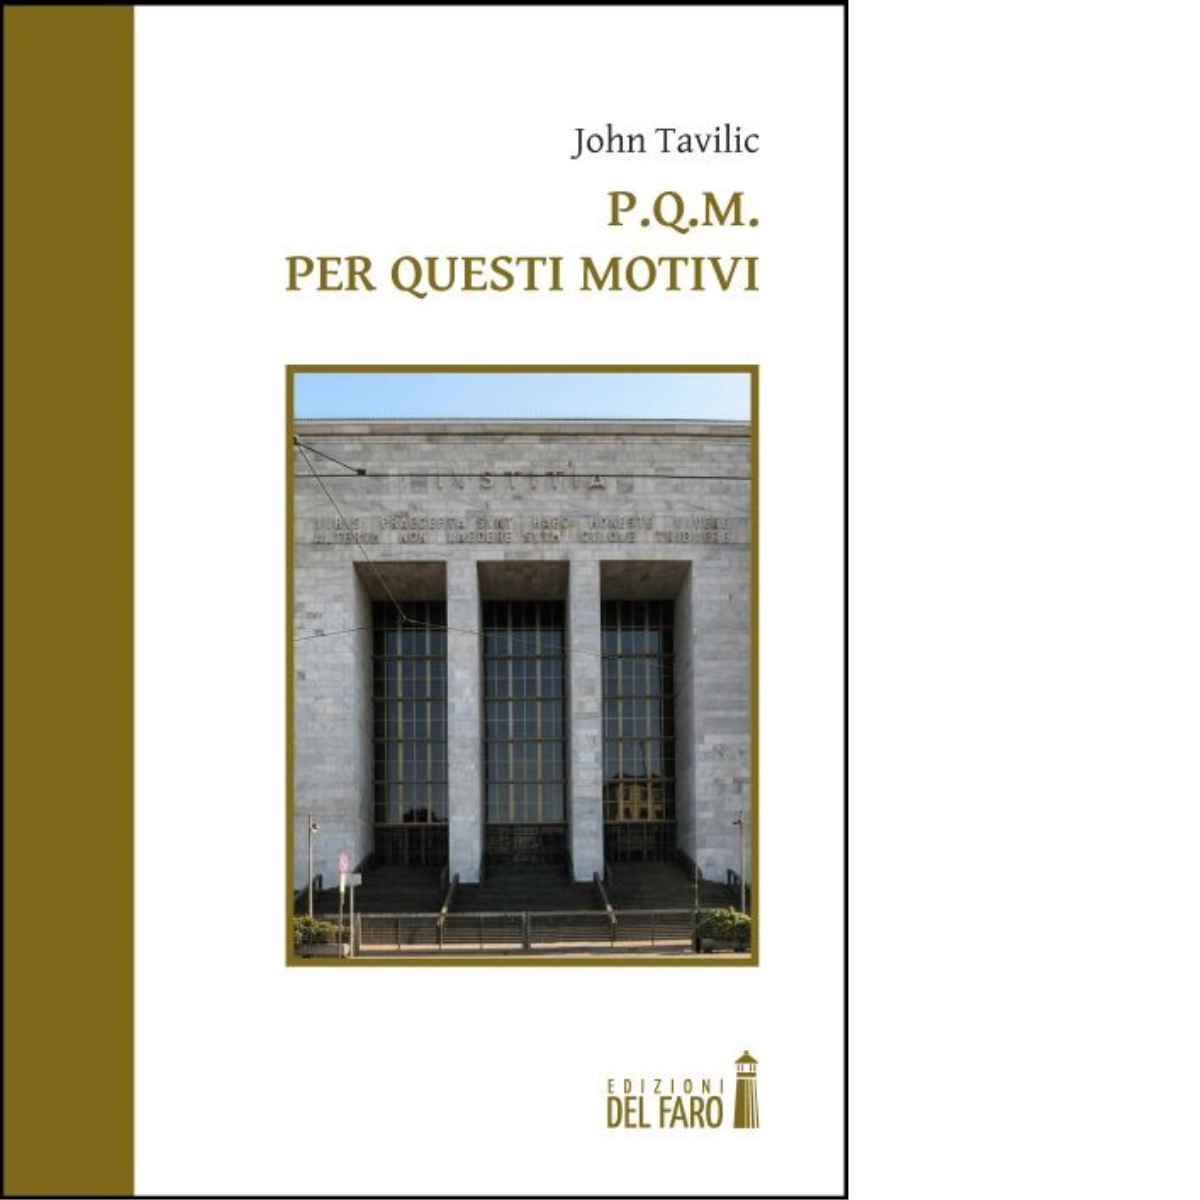 P.Q.M. Per questi motivi di Tavilic John - Edizioni Del faro, 2013 libro usato